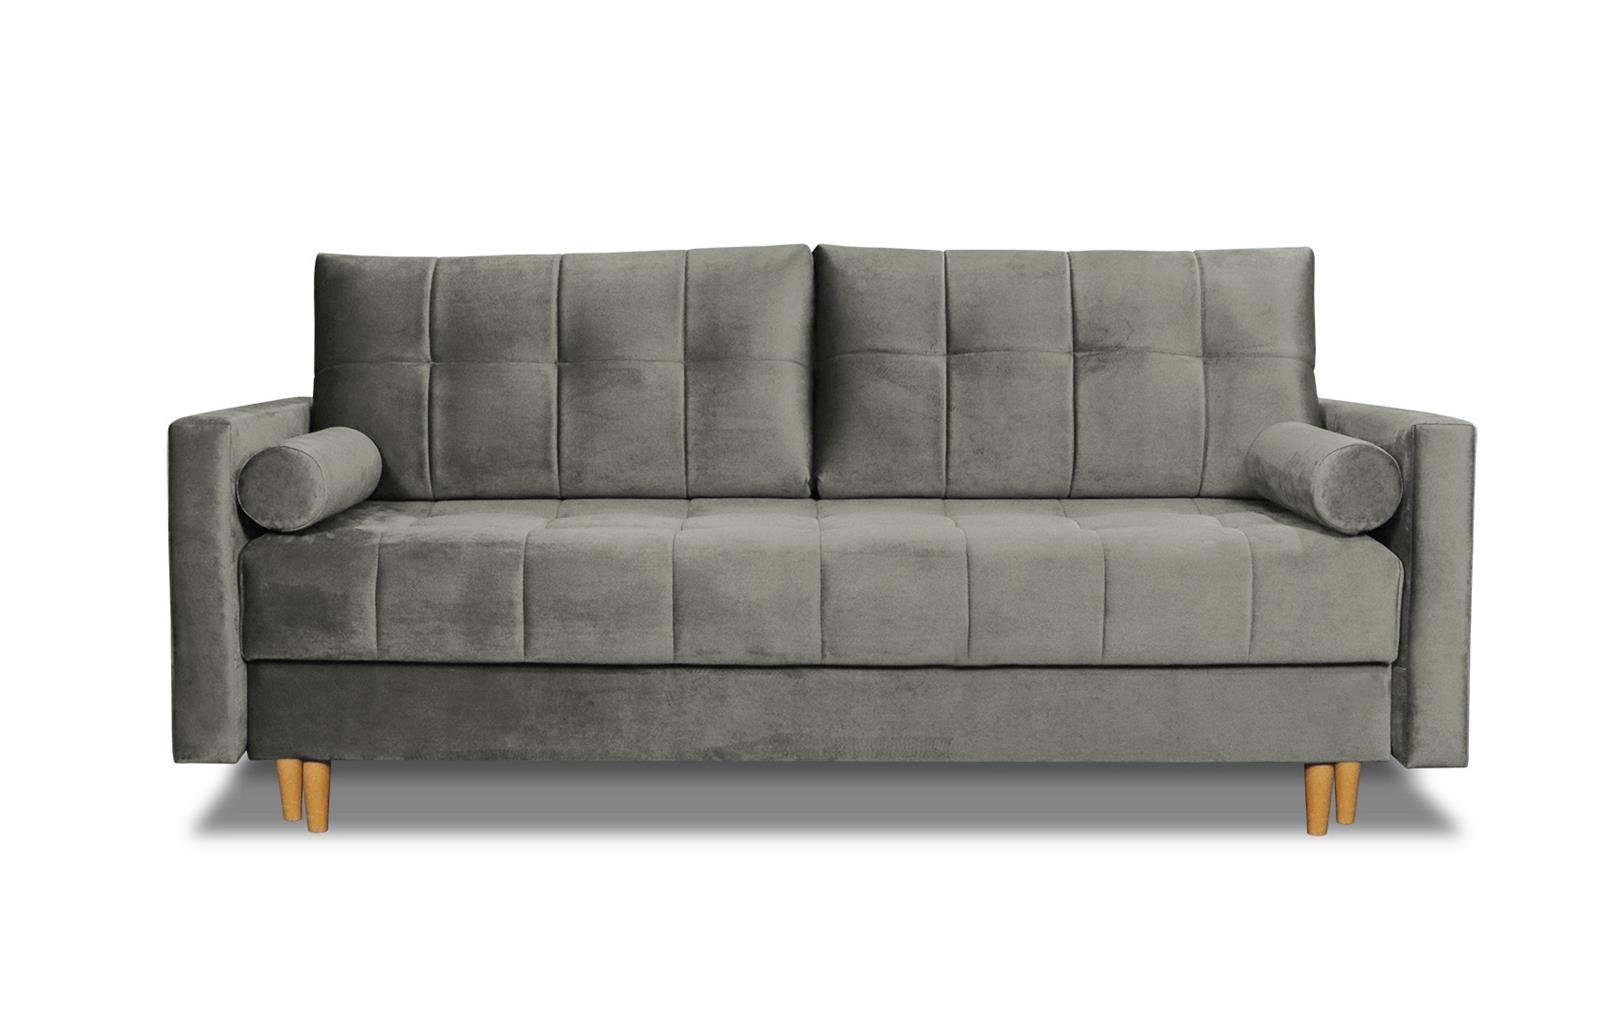 Beautysofa Schlafsofa skandinavisches (kronos und Wohnzimmer Khaki-Grau Randvi, im Bettkasten, für Polstersofa, mit Stil, Sofa 15) Bettfunktion Couch